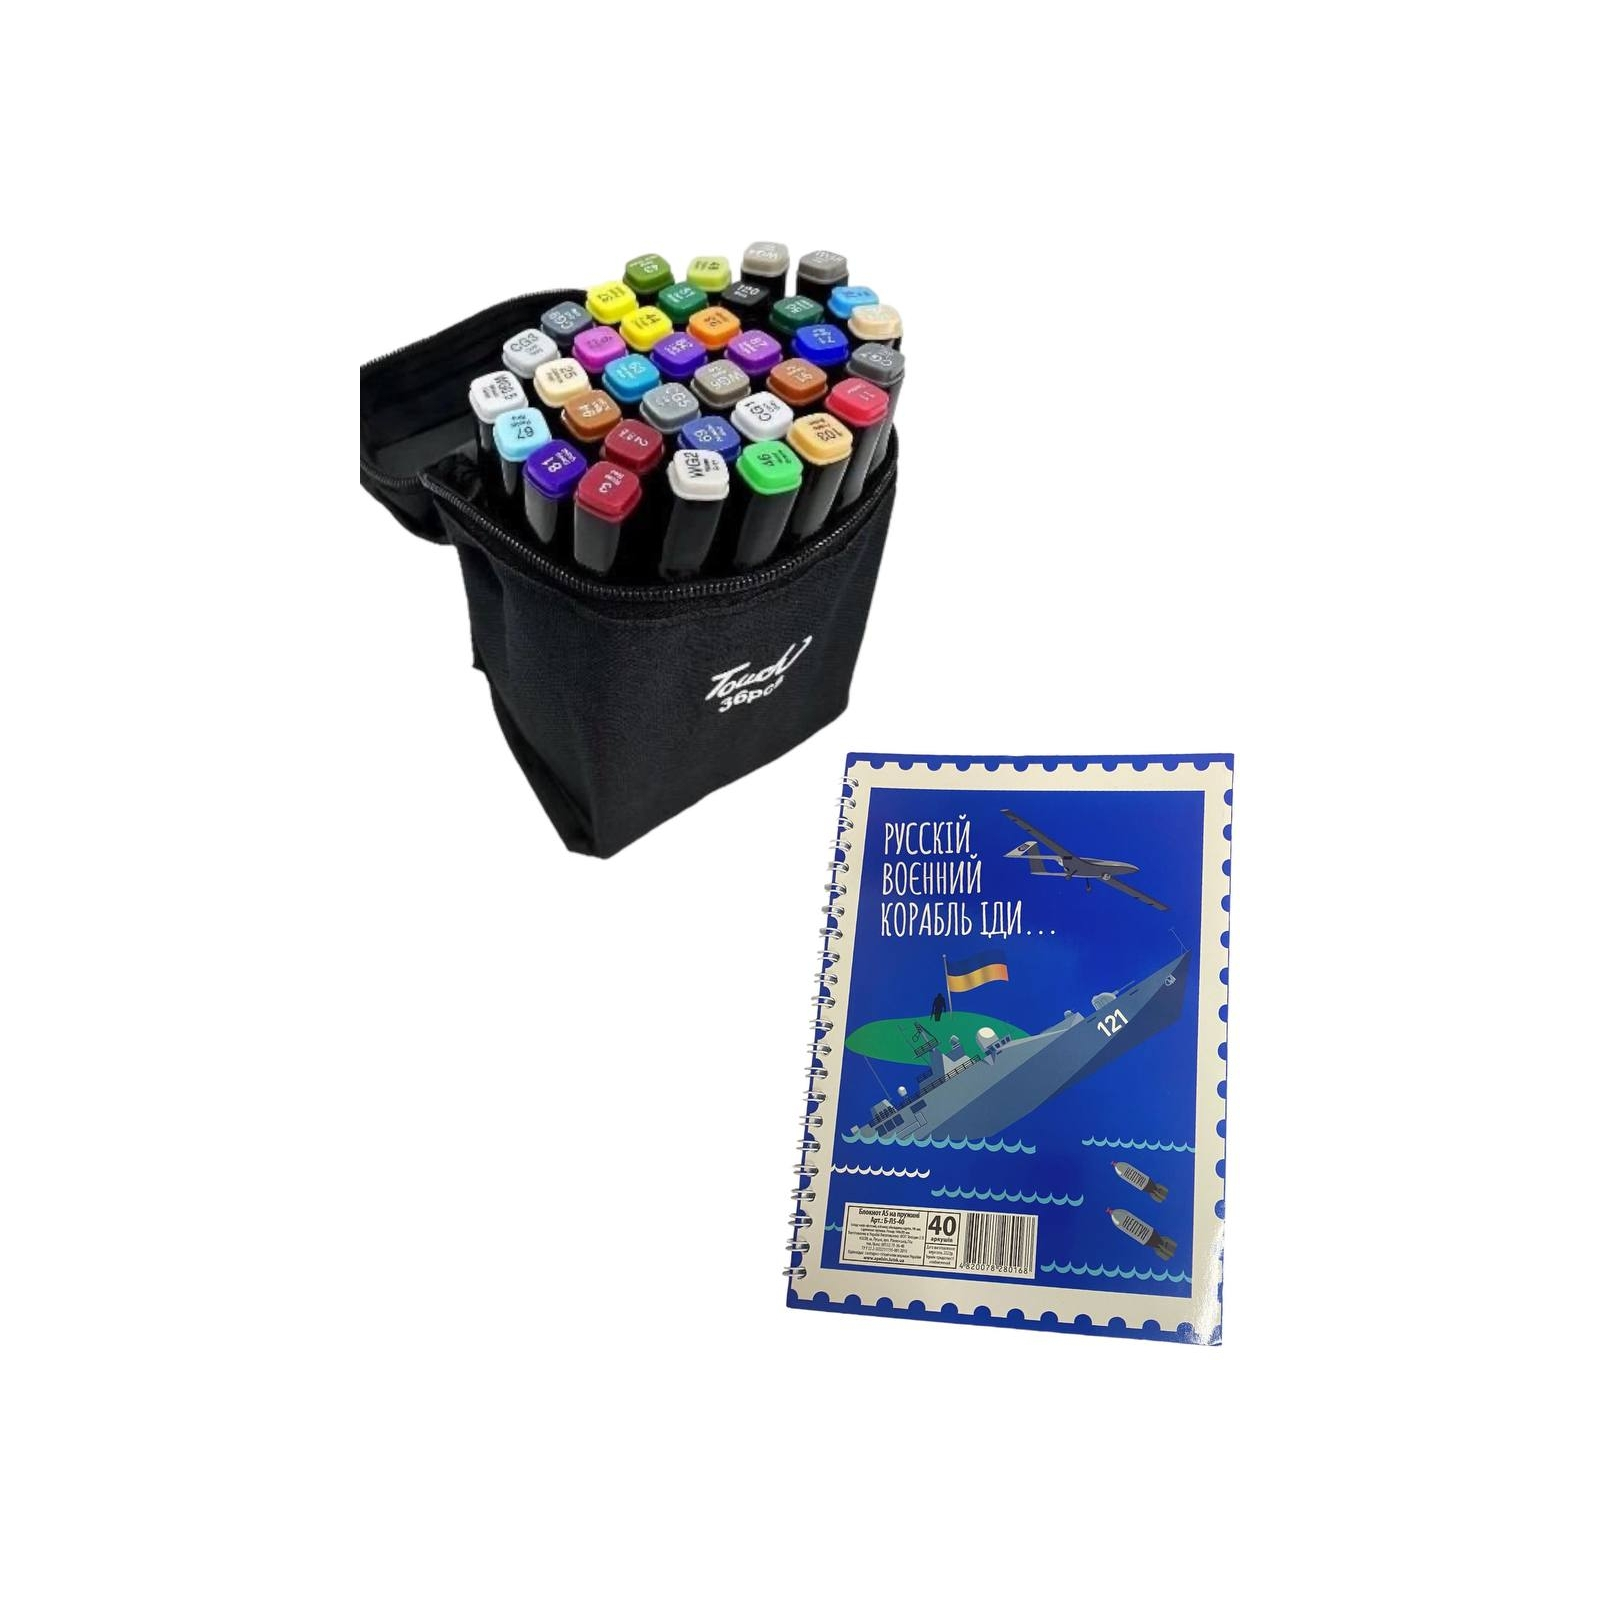 Набор маркеров Touch двухсторонних скетч маркеров 36 шт в чехле + блокнот А5 (40 л) в ассортименте для мальчиков (XK-MRK-BOY) изображение 12